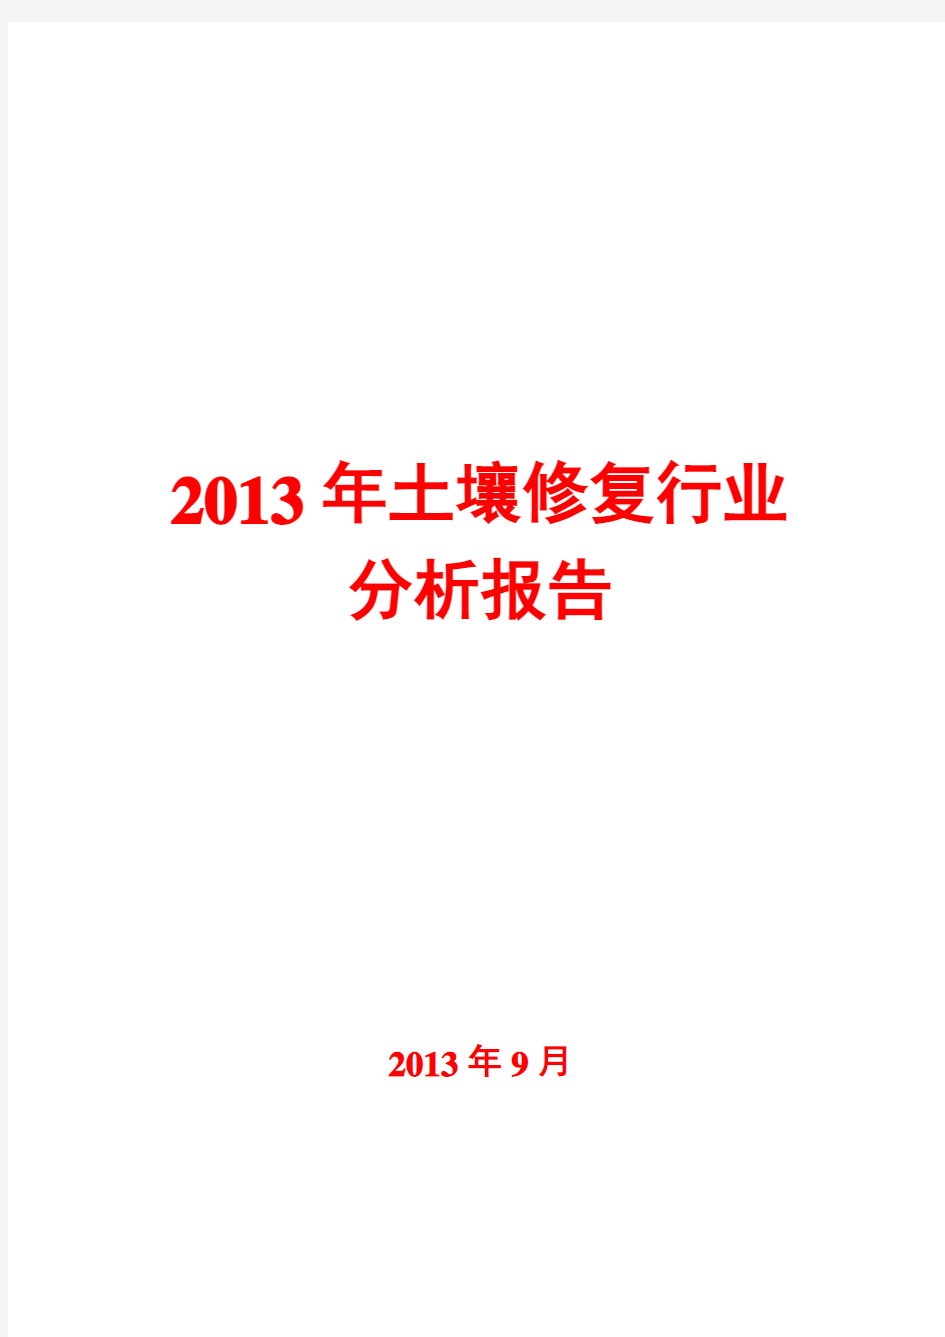 2013年土壤修复行业分析报告